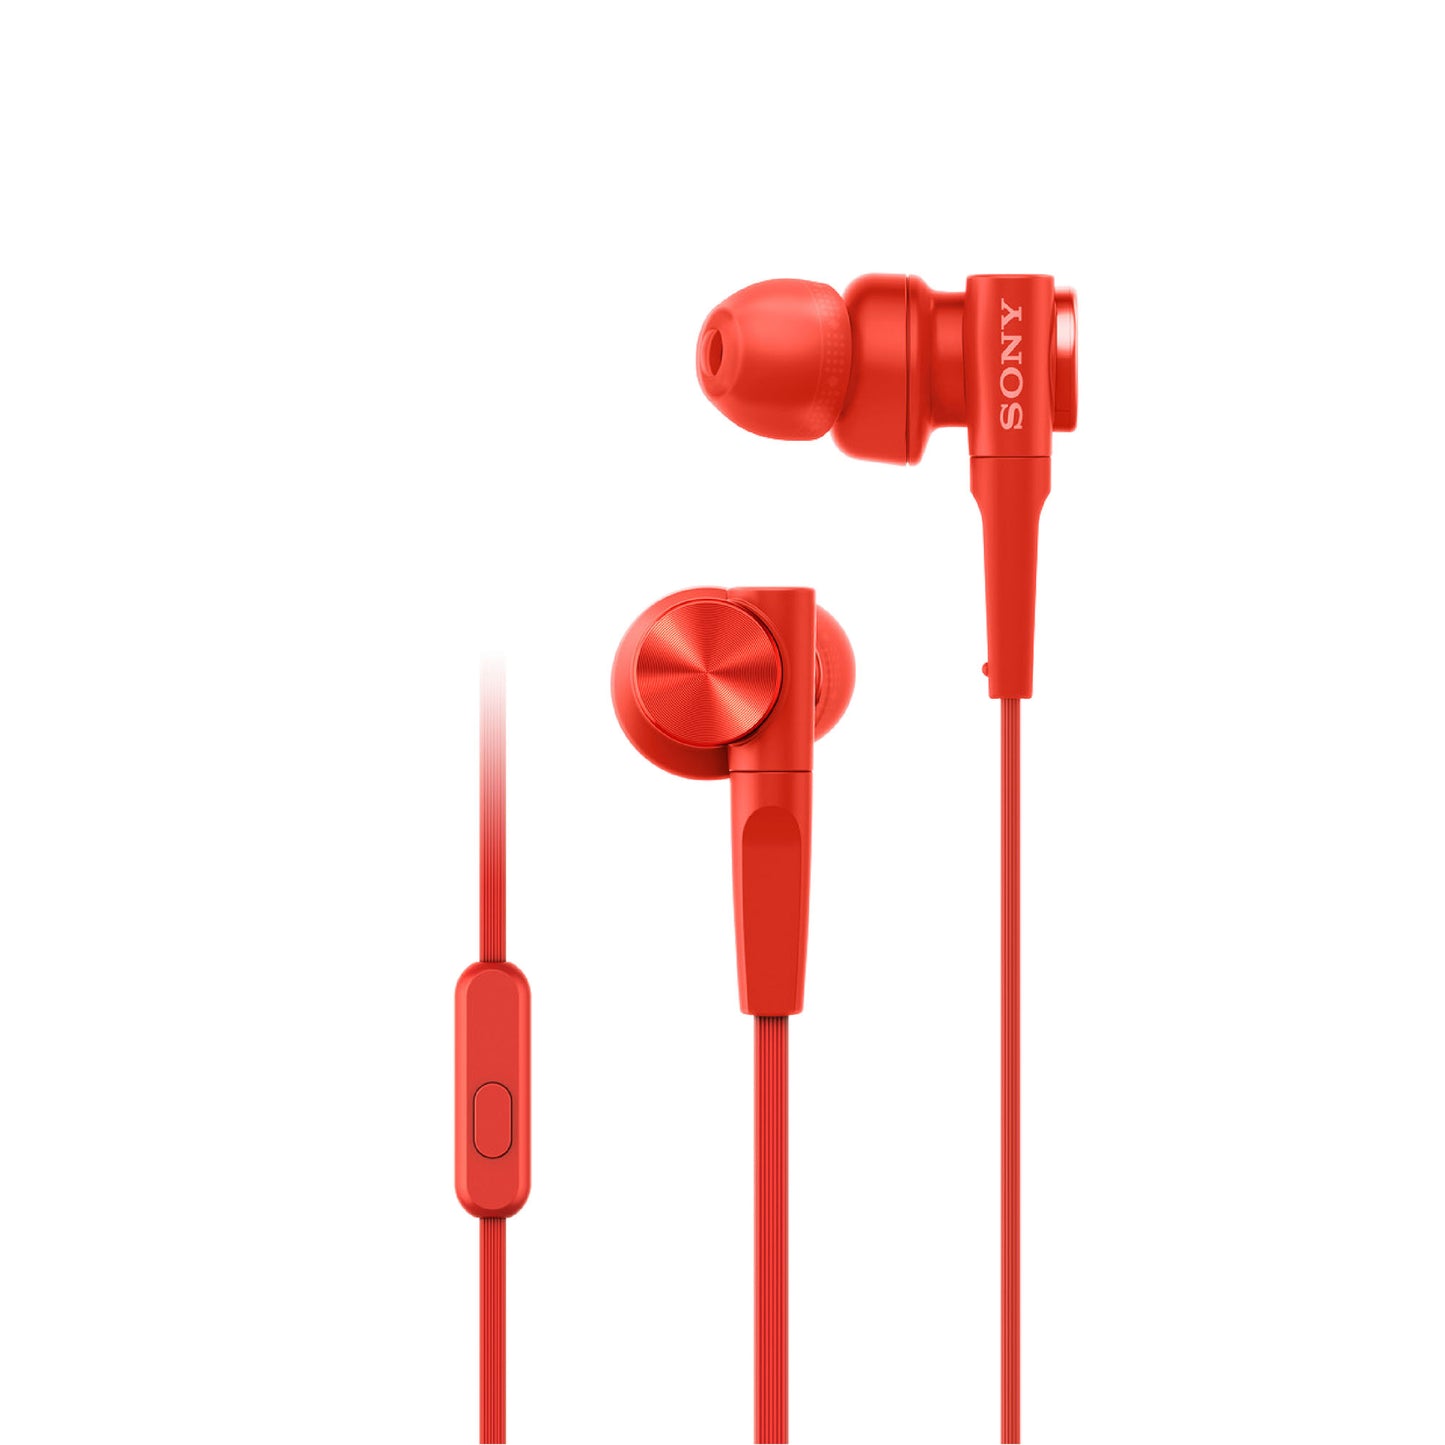 SONY MDR-XB55AP Extra Bass In-Ear Earphones - Red